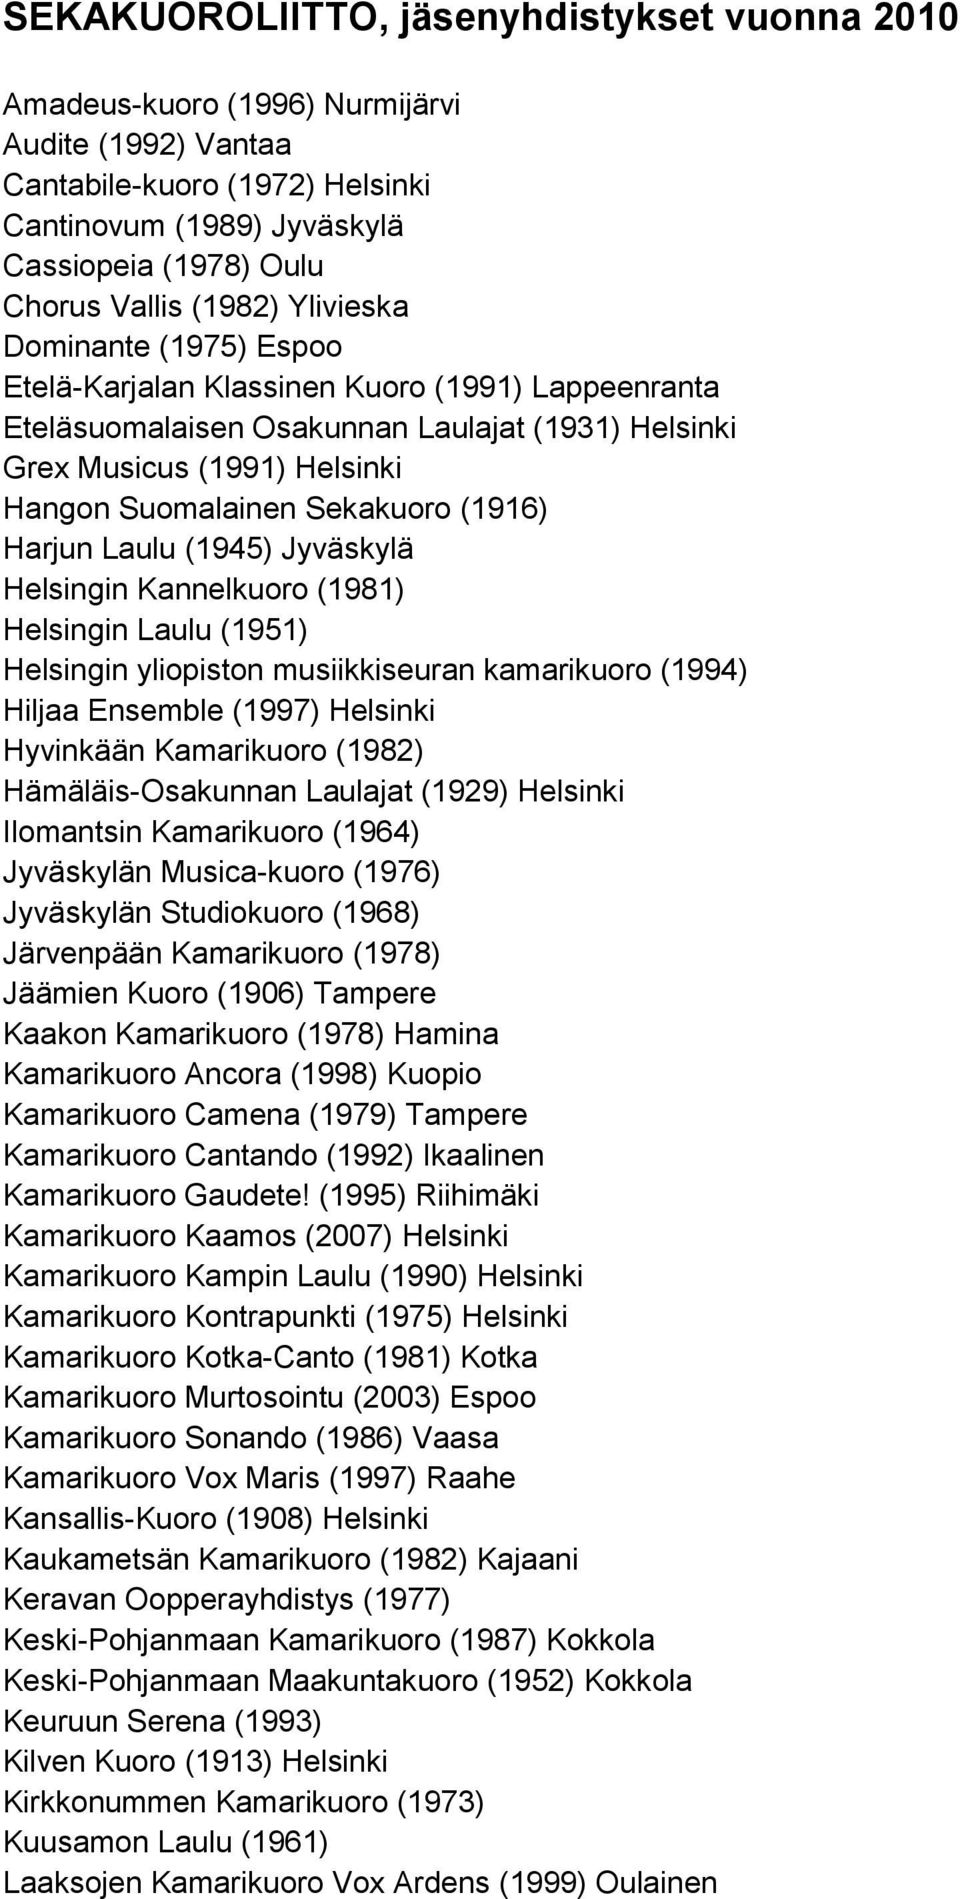 Sekakuoro (1916) Harjun Laulu (1945) Jyväskylä Helsingin Kannelkuoro (1981) Helsingin Laulu (1951) Helsingin yliopiston musiikkiseuran kamarikuoro (1994) Hiljaa Ensemble (1997) Helsinki Hyvinkään